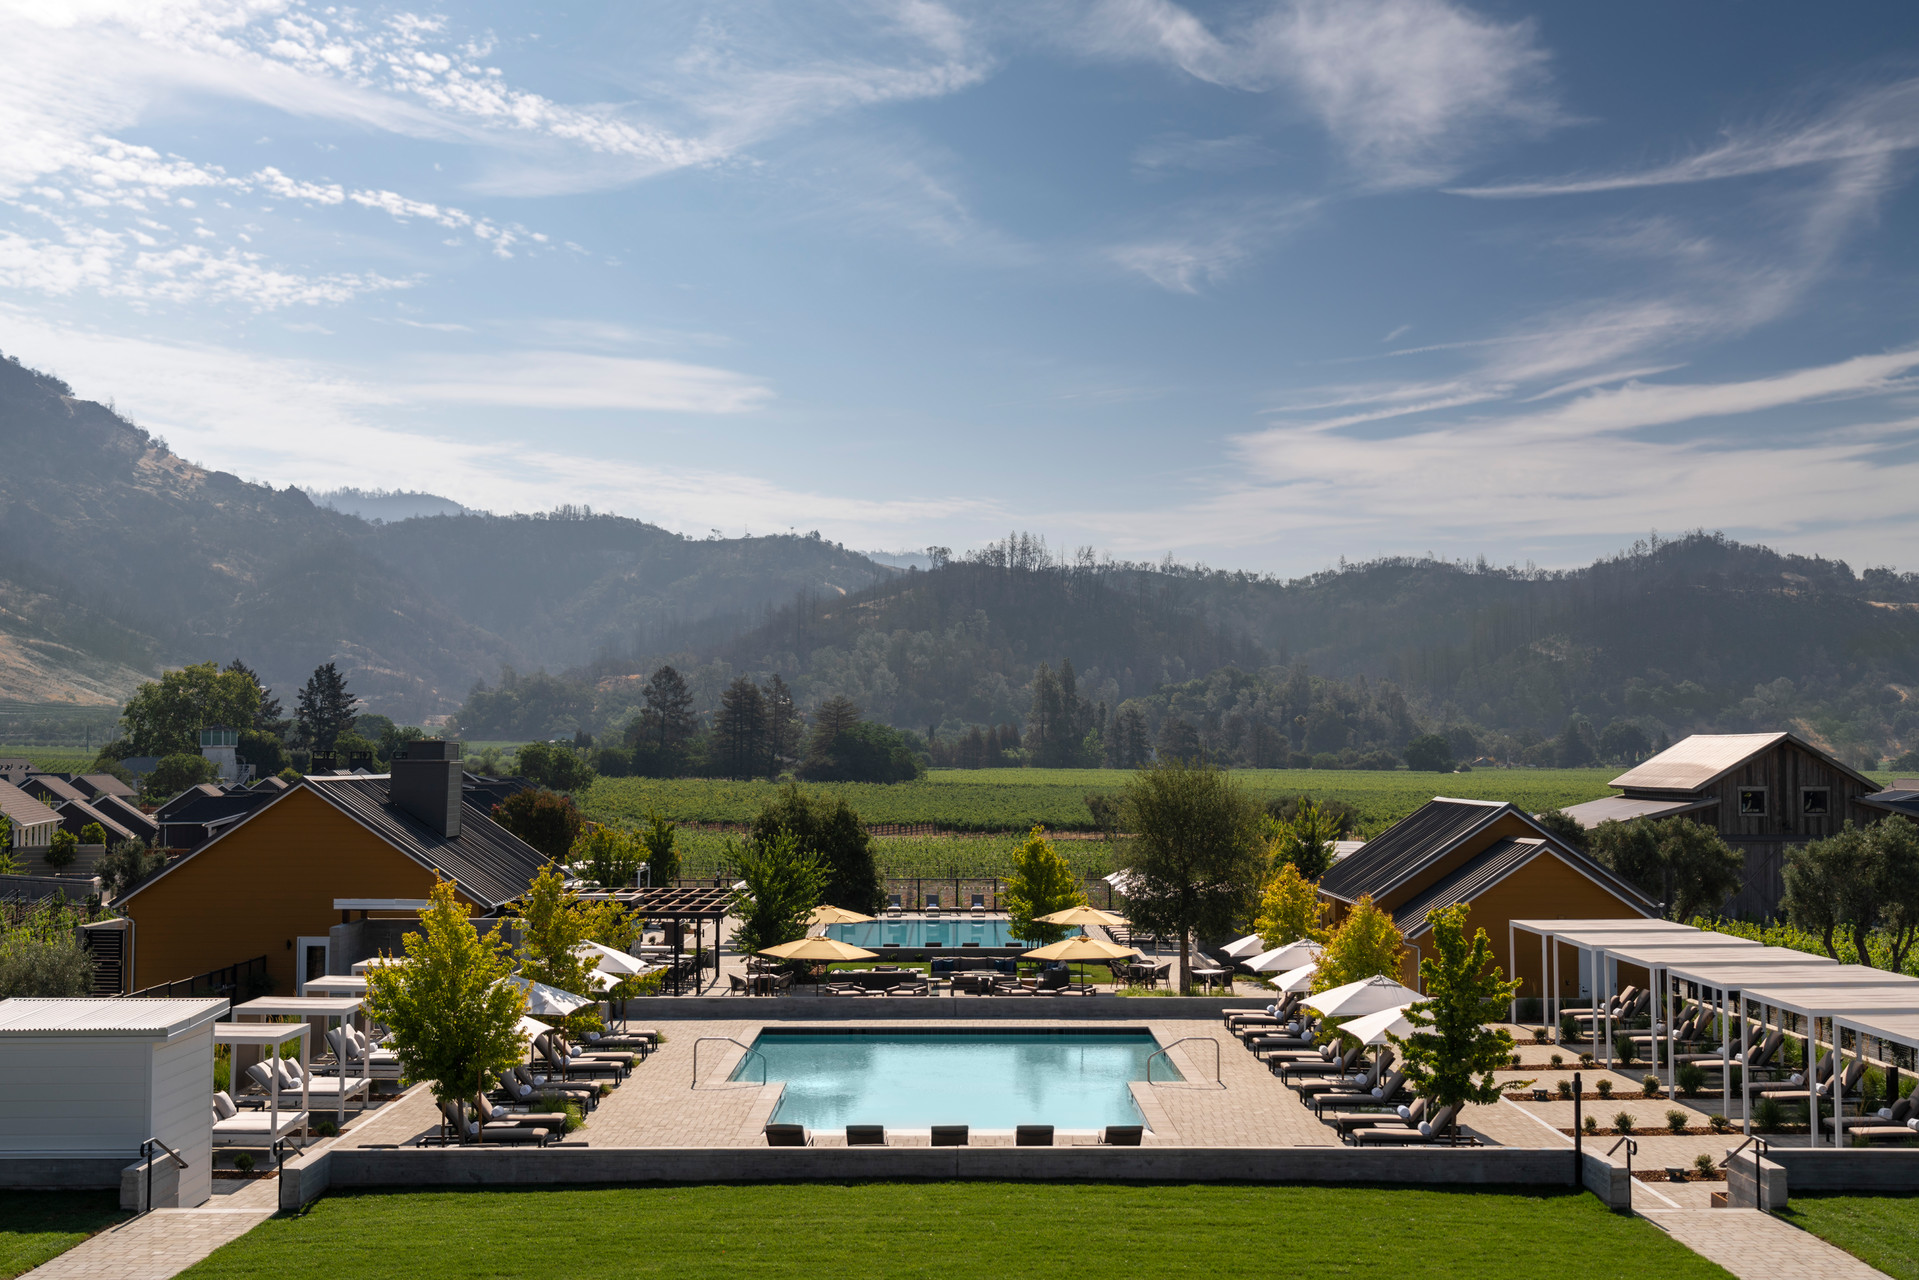 Four Seasons Resort Napa Valley View Overlooking Pools.jpg